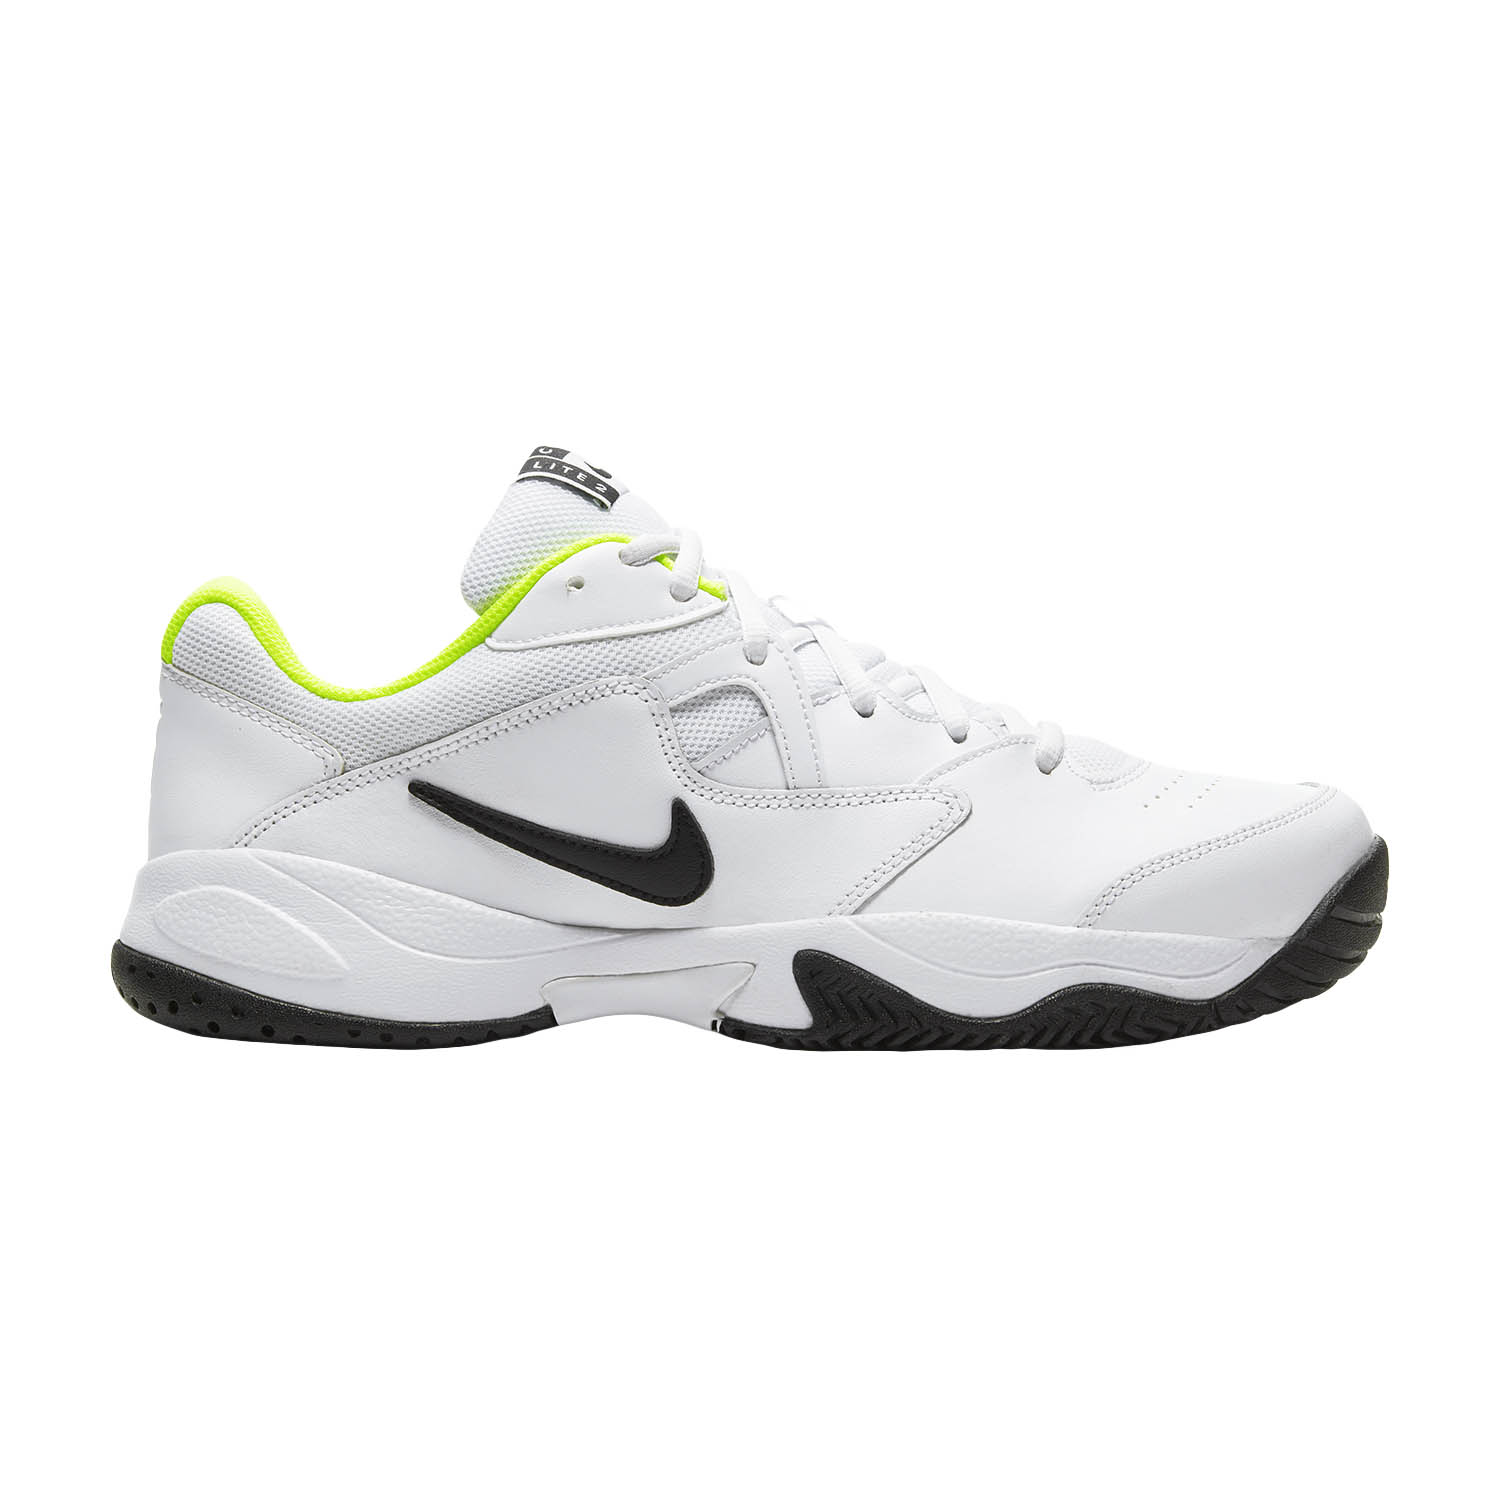 Nike Court Lite 2 Scarpe da Tennis Uomo - White/Black/Volt